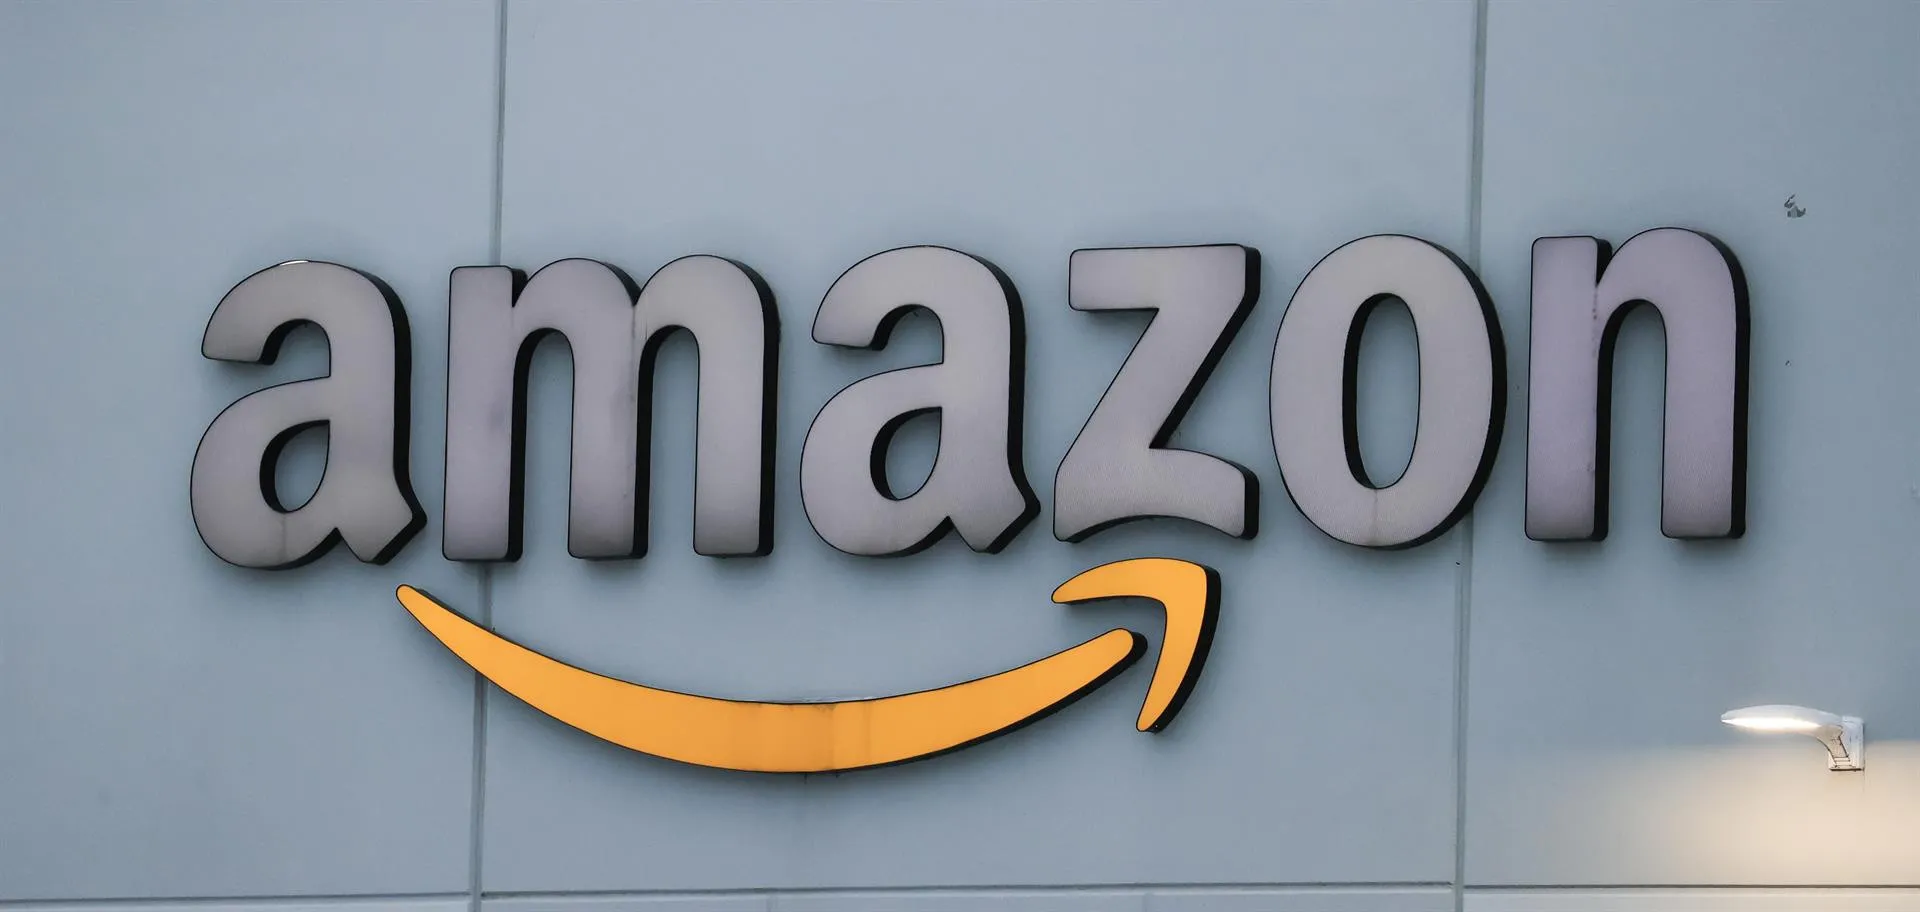 Gigante Amazon demandado por impedir competencia y perjudicar clientes